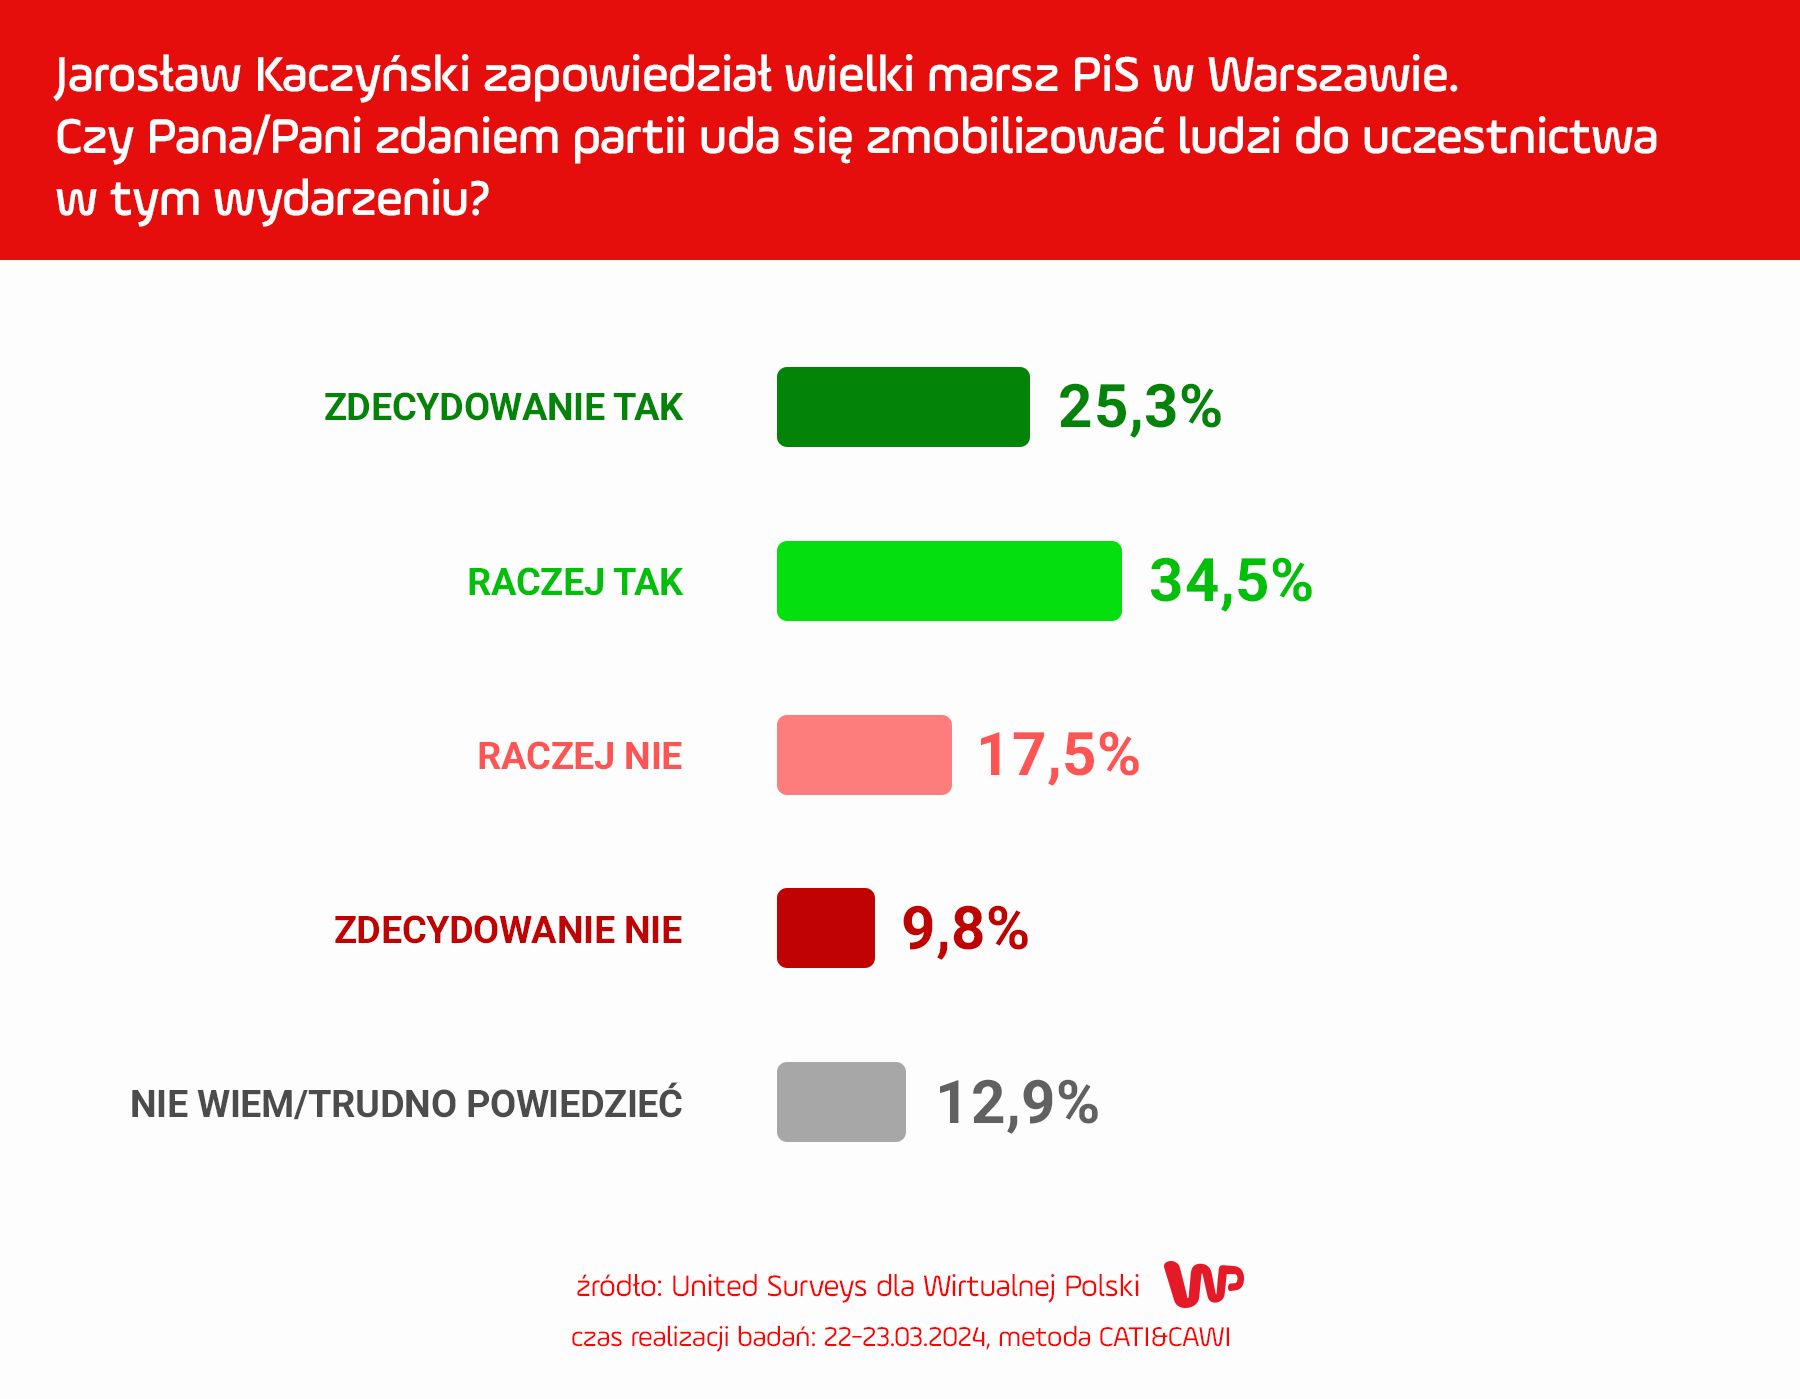 kaczyński zapowiedział wielki marsz pis. polacy zabrali głos